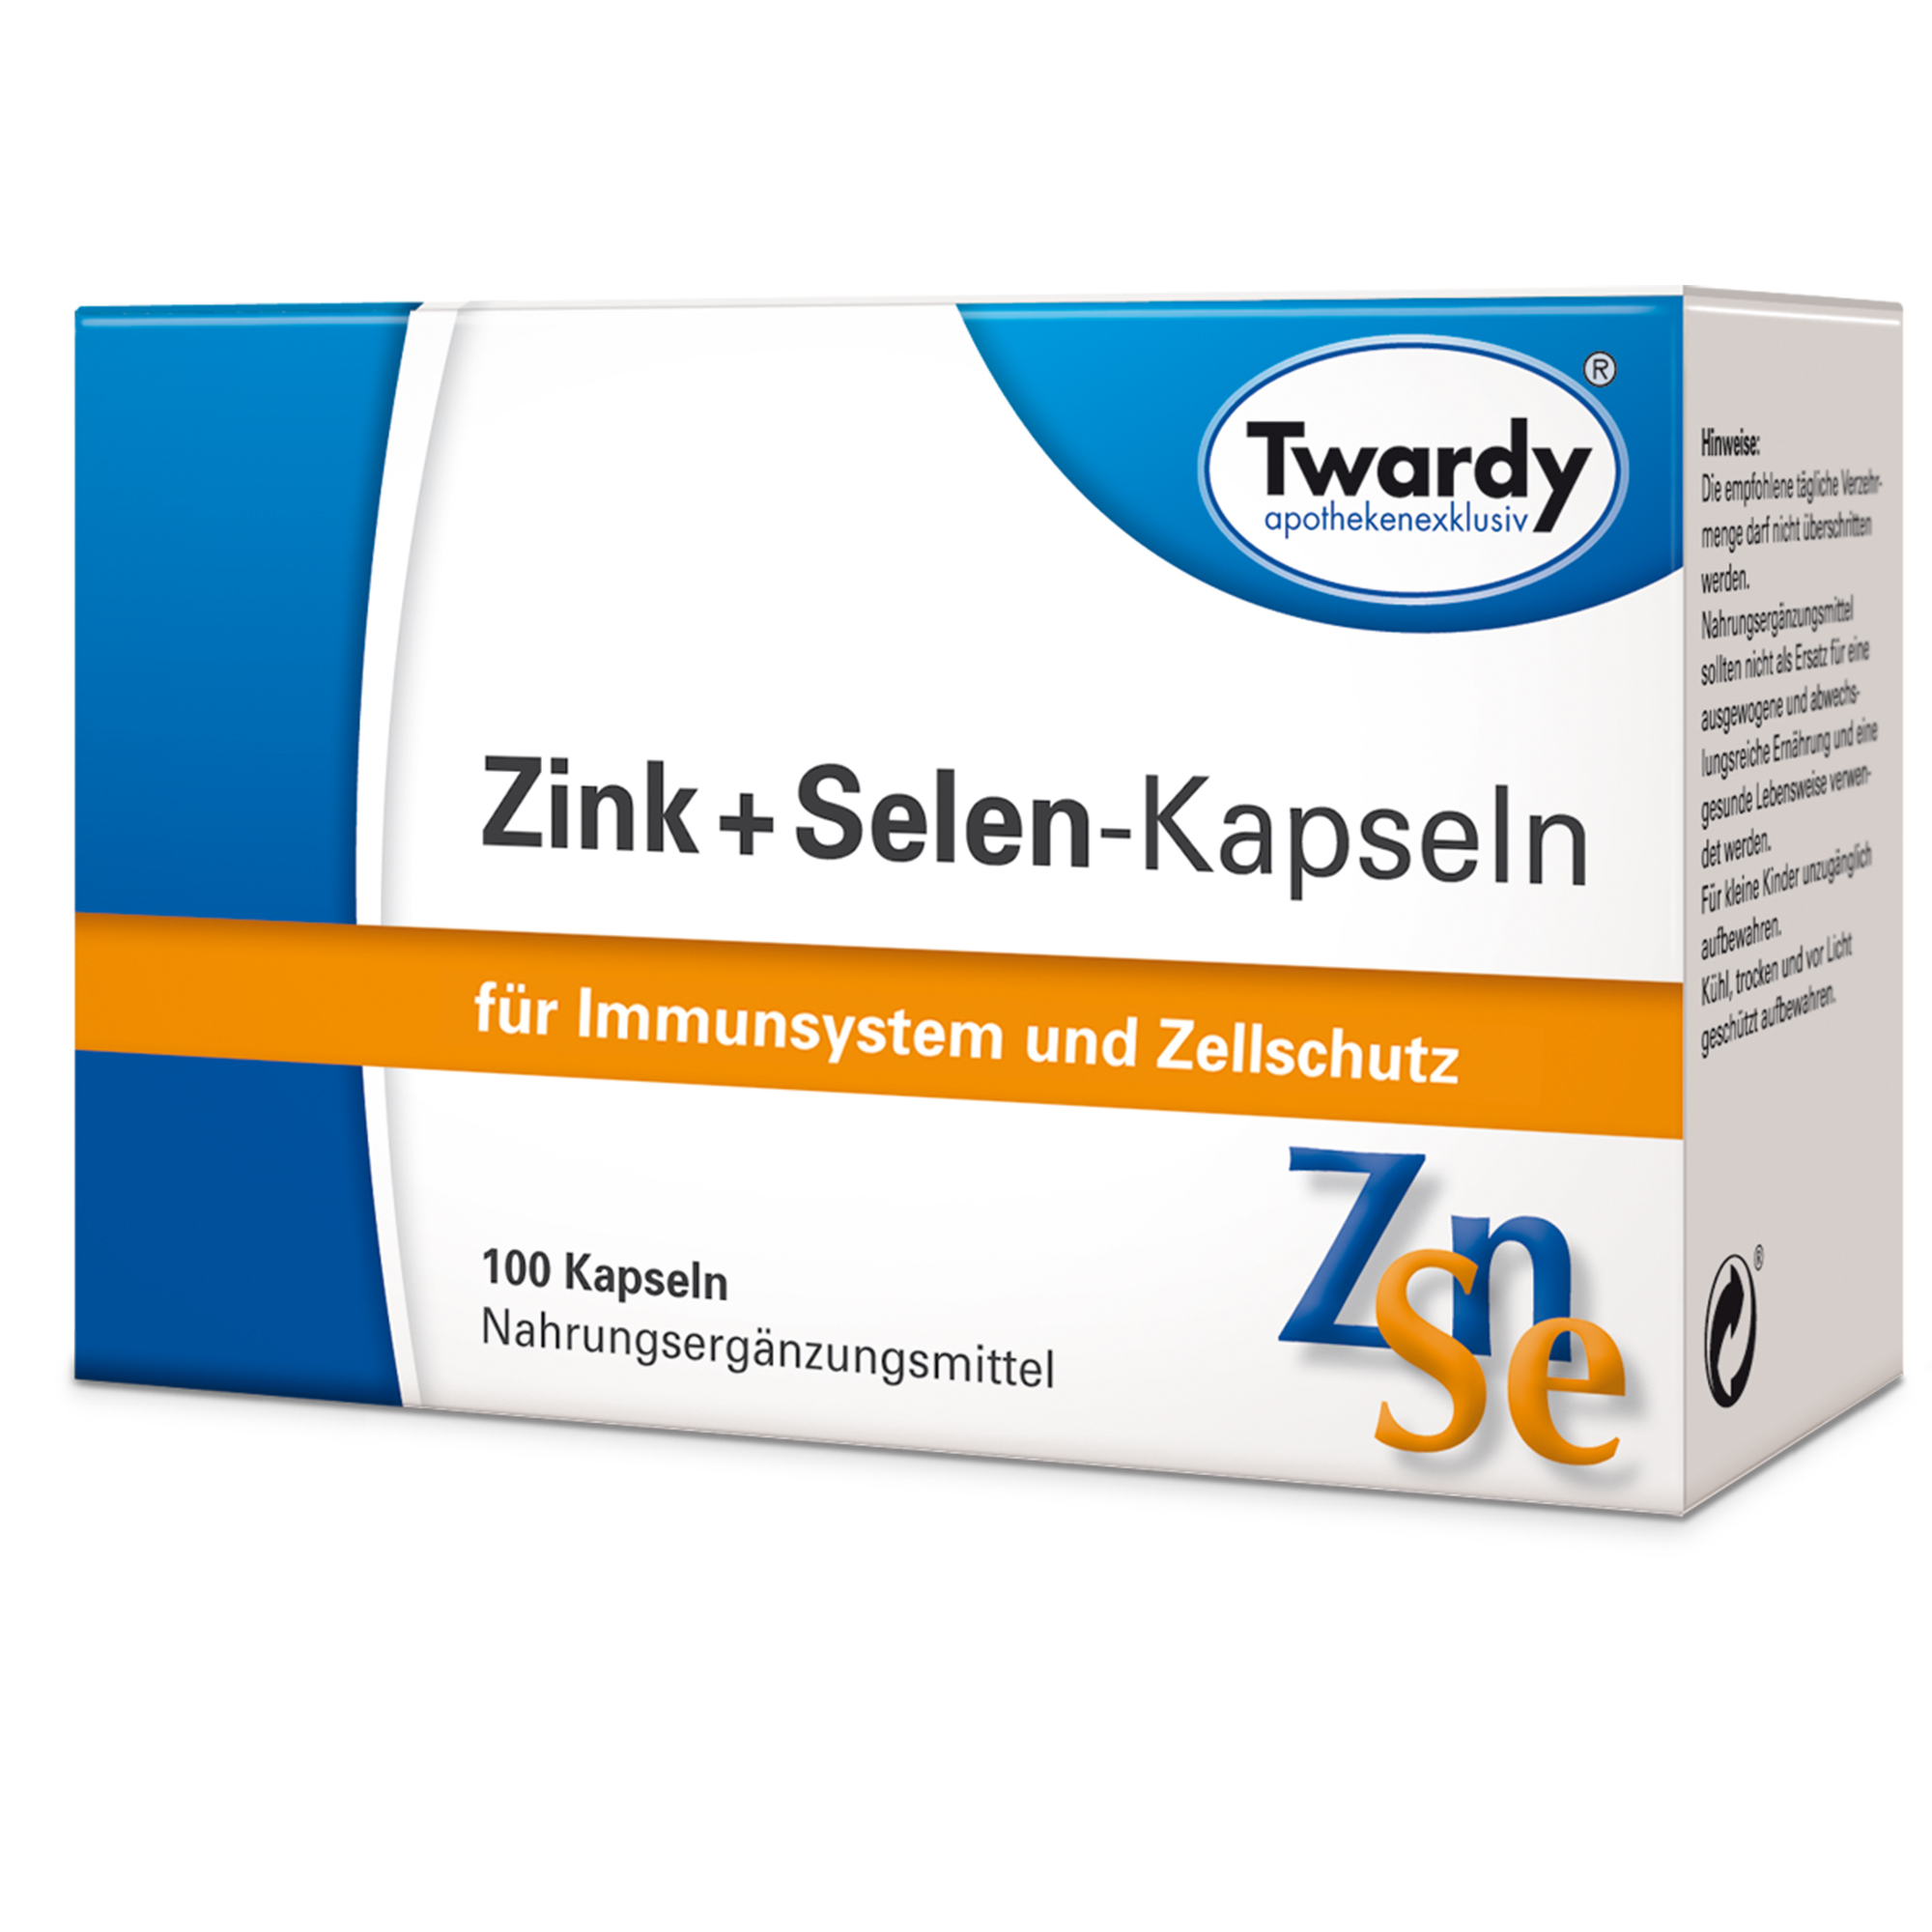 Zink + Selen-Kapseln 100 – PZN 07709635